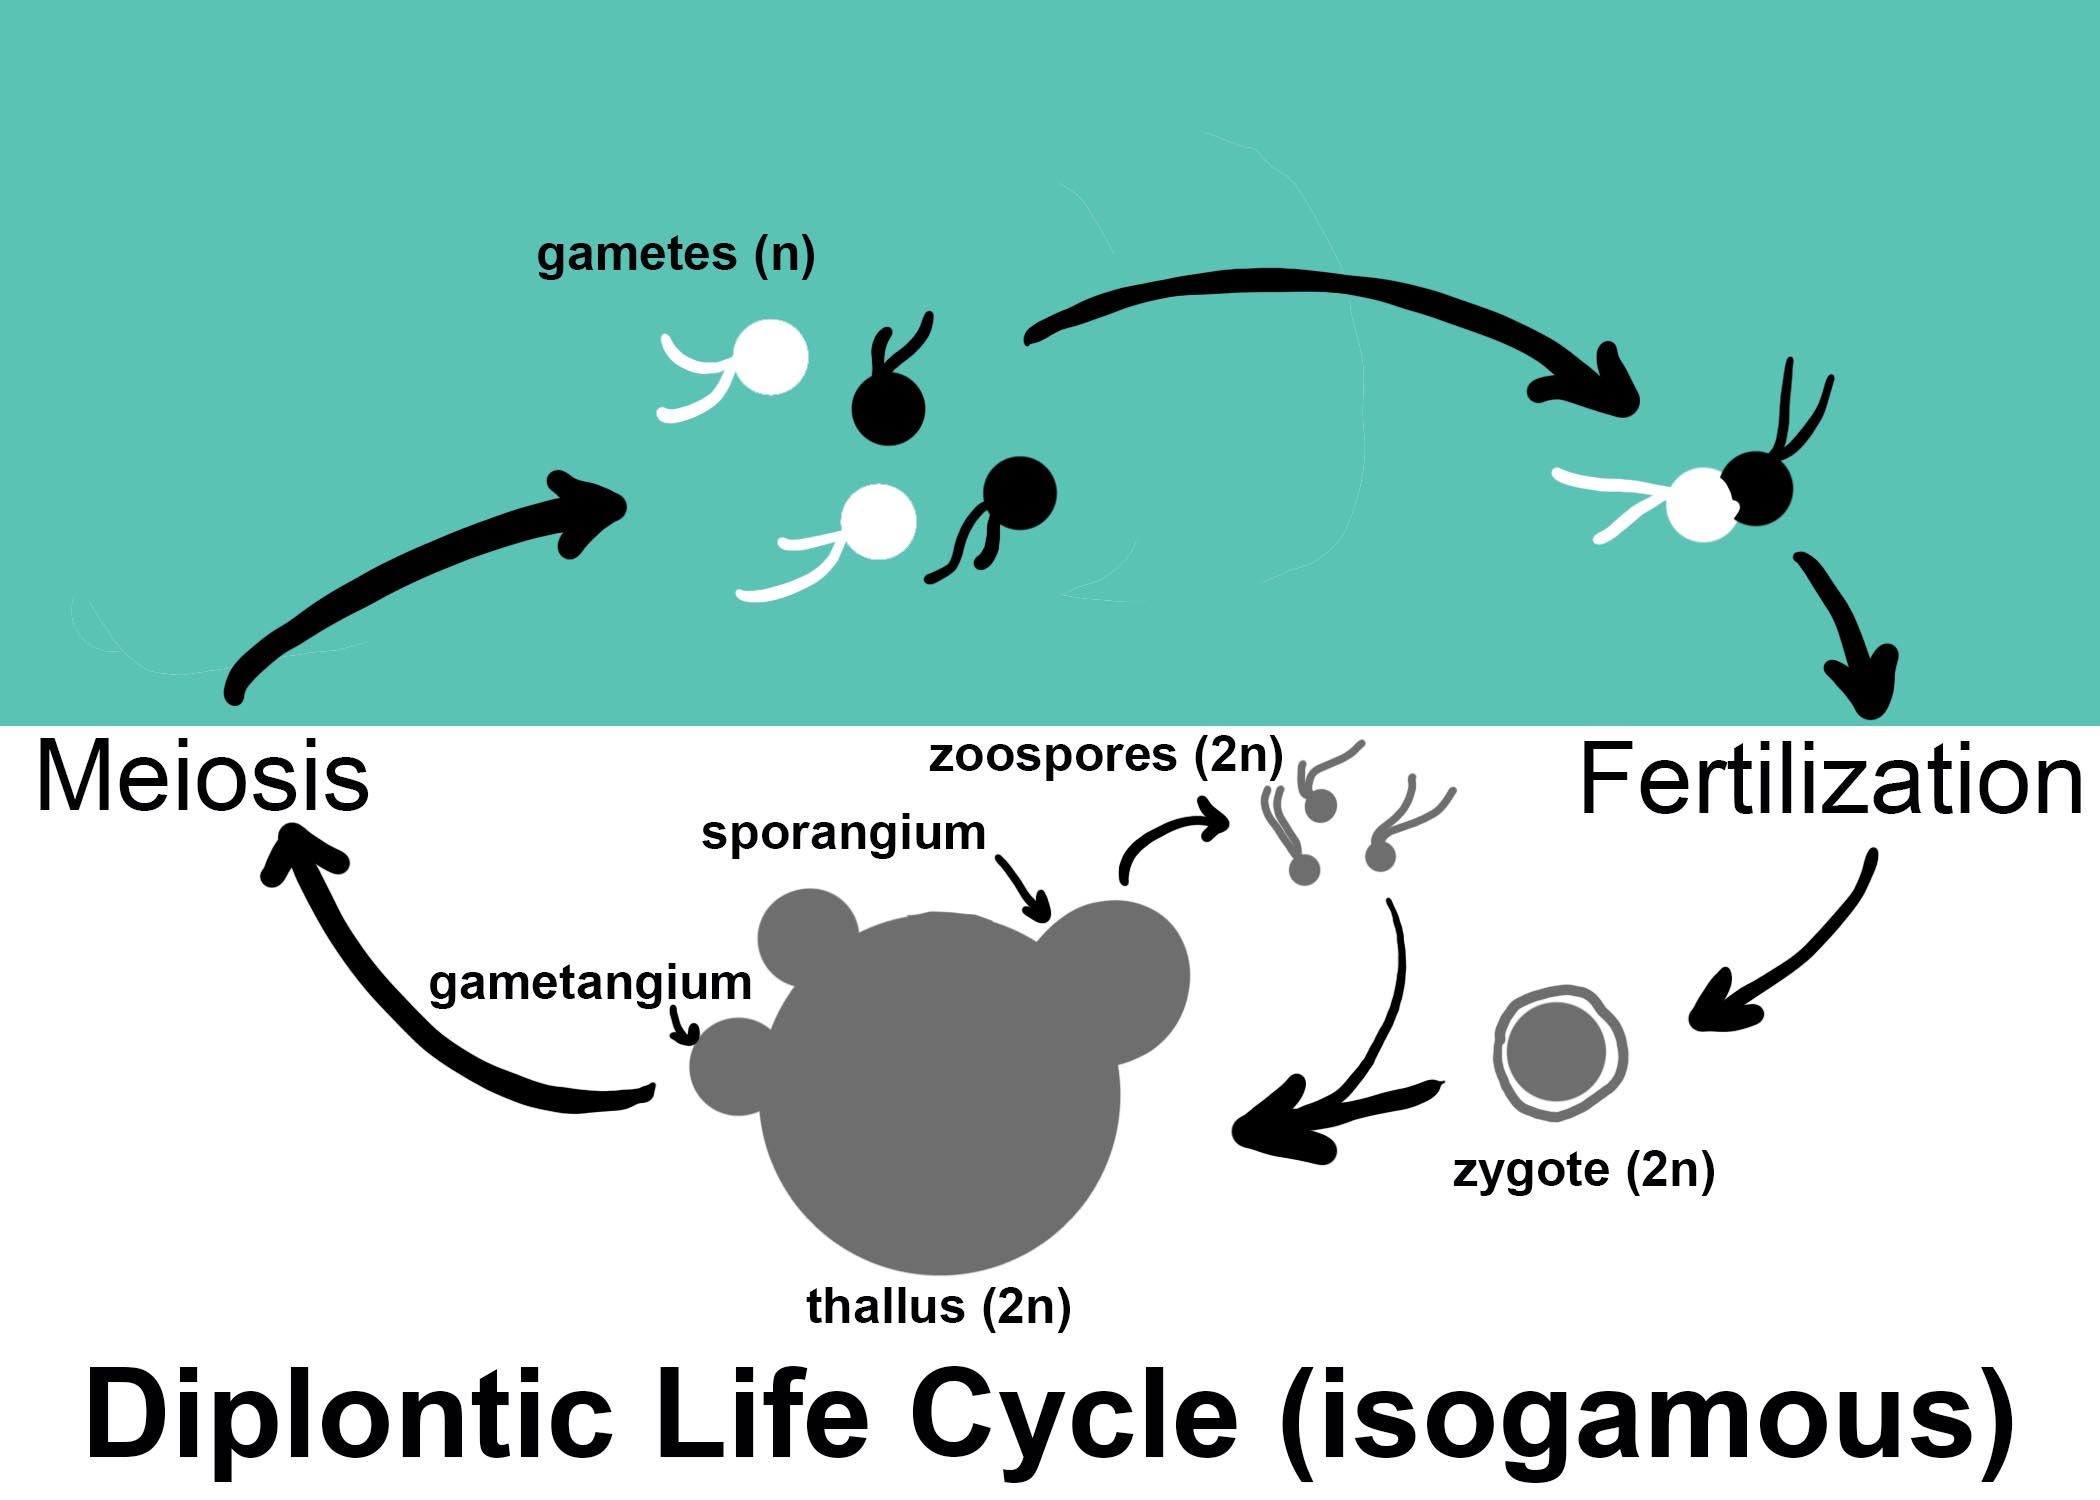 Diplontic life cycle diagram. 